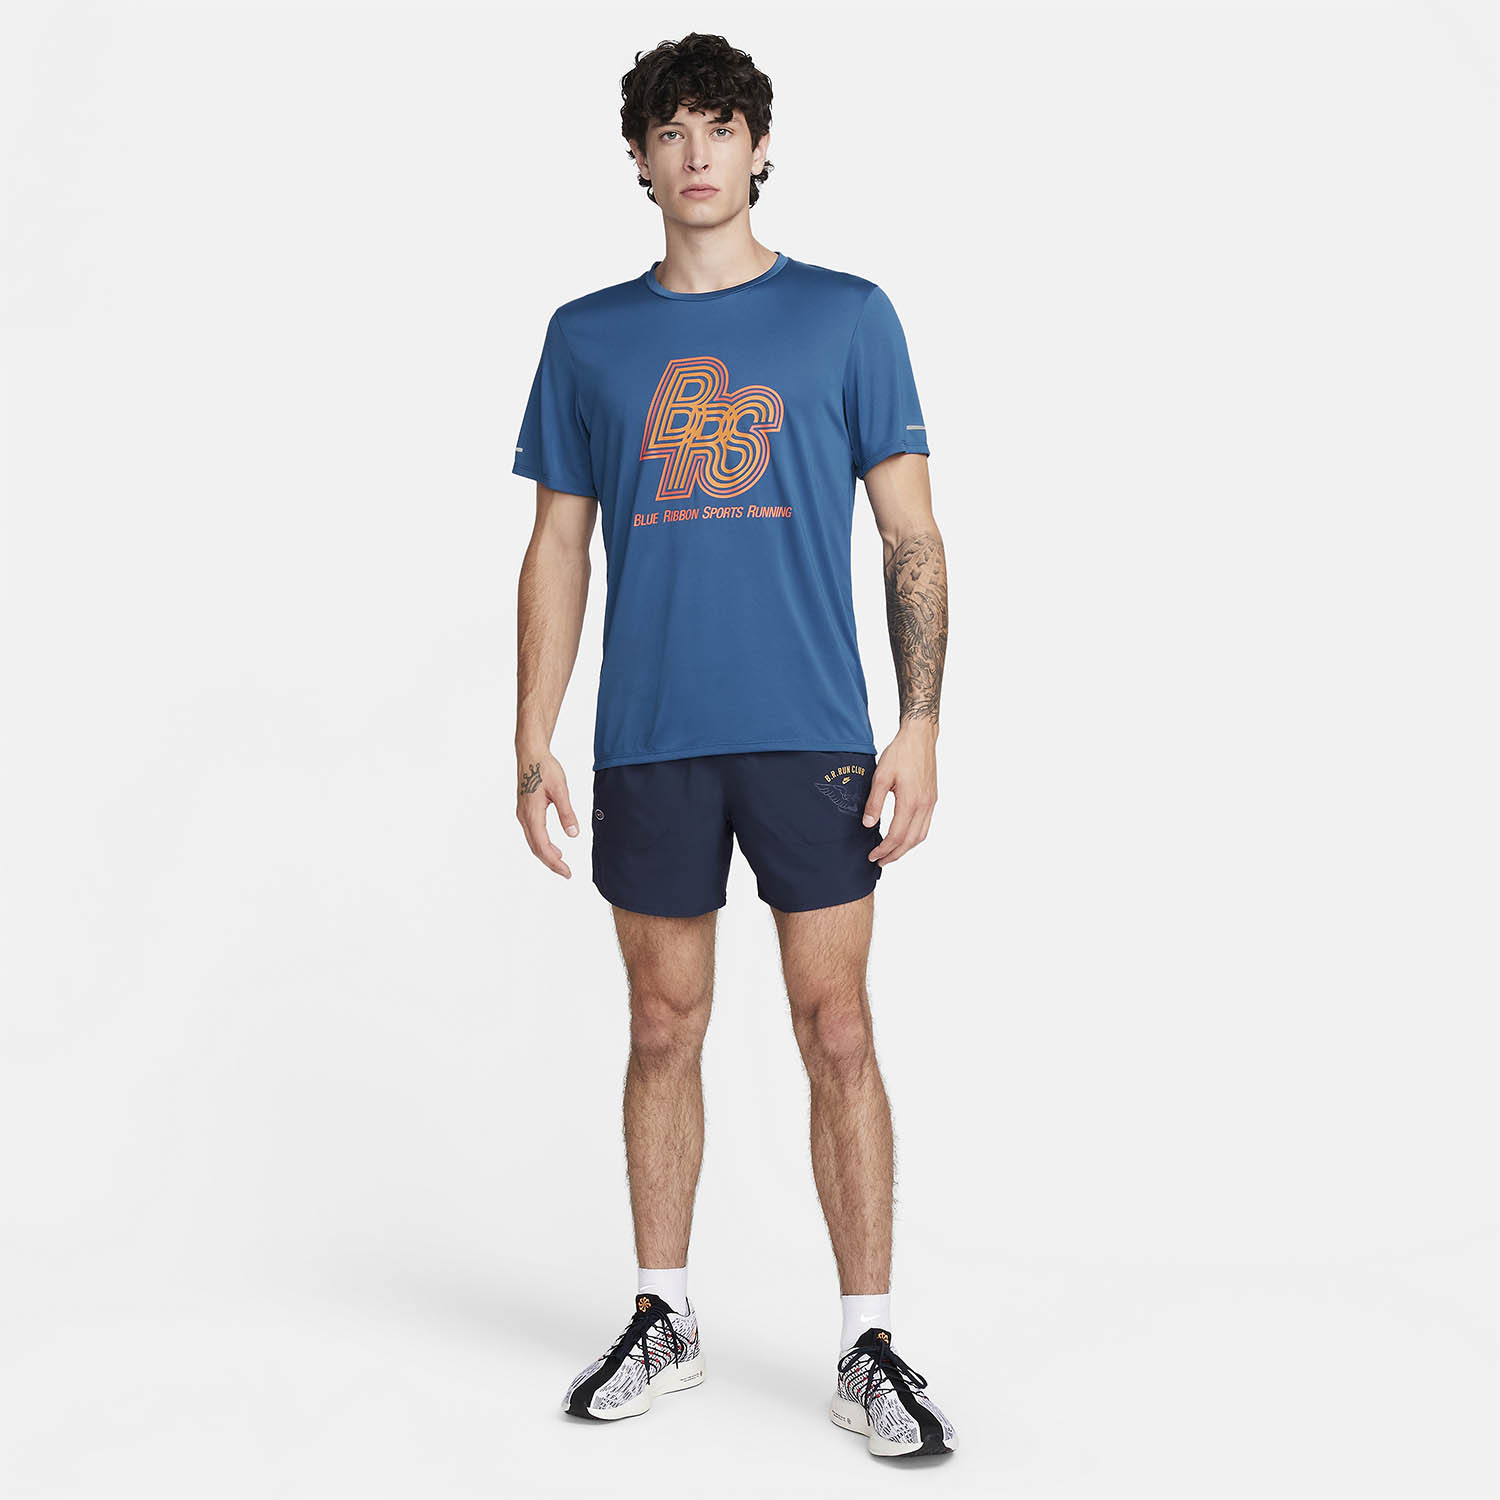 Nike Run Energy Rise 365 BRS Camiseta - Court Blue/Safety Orange